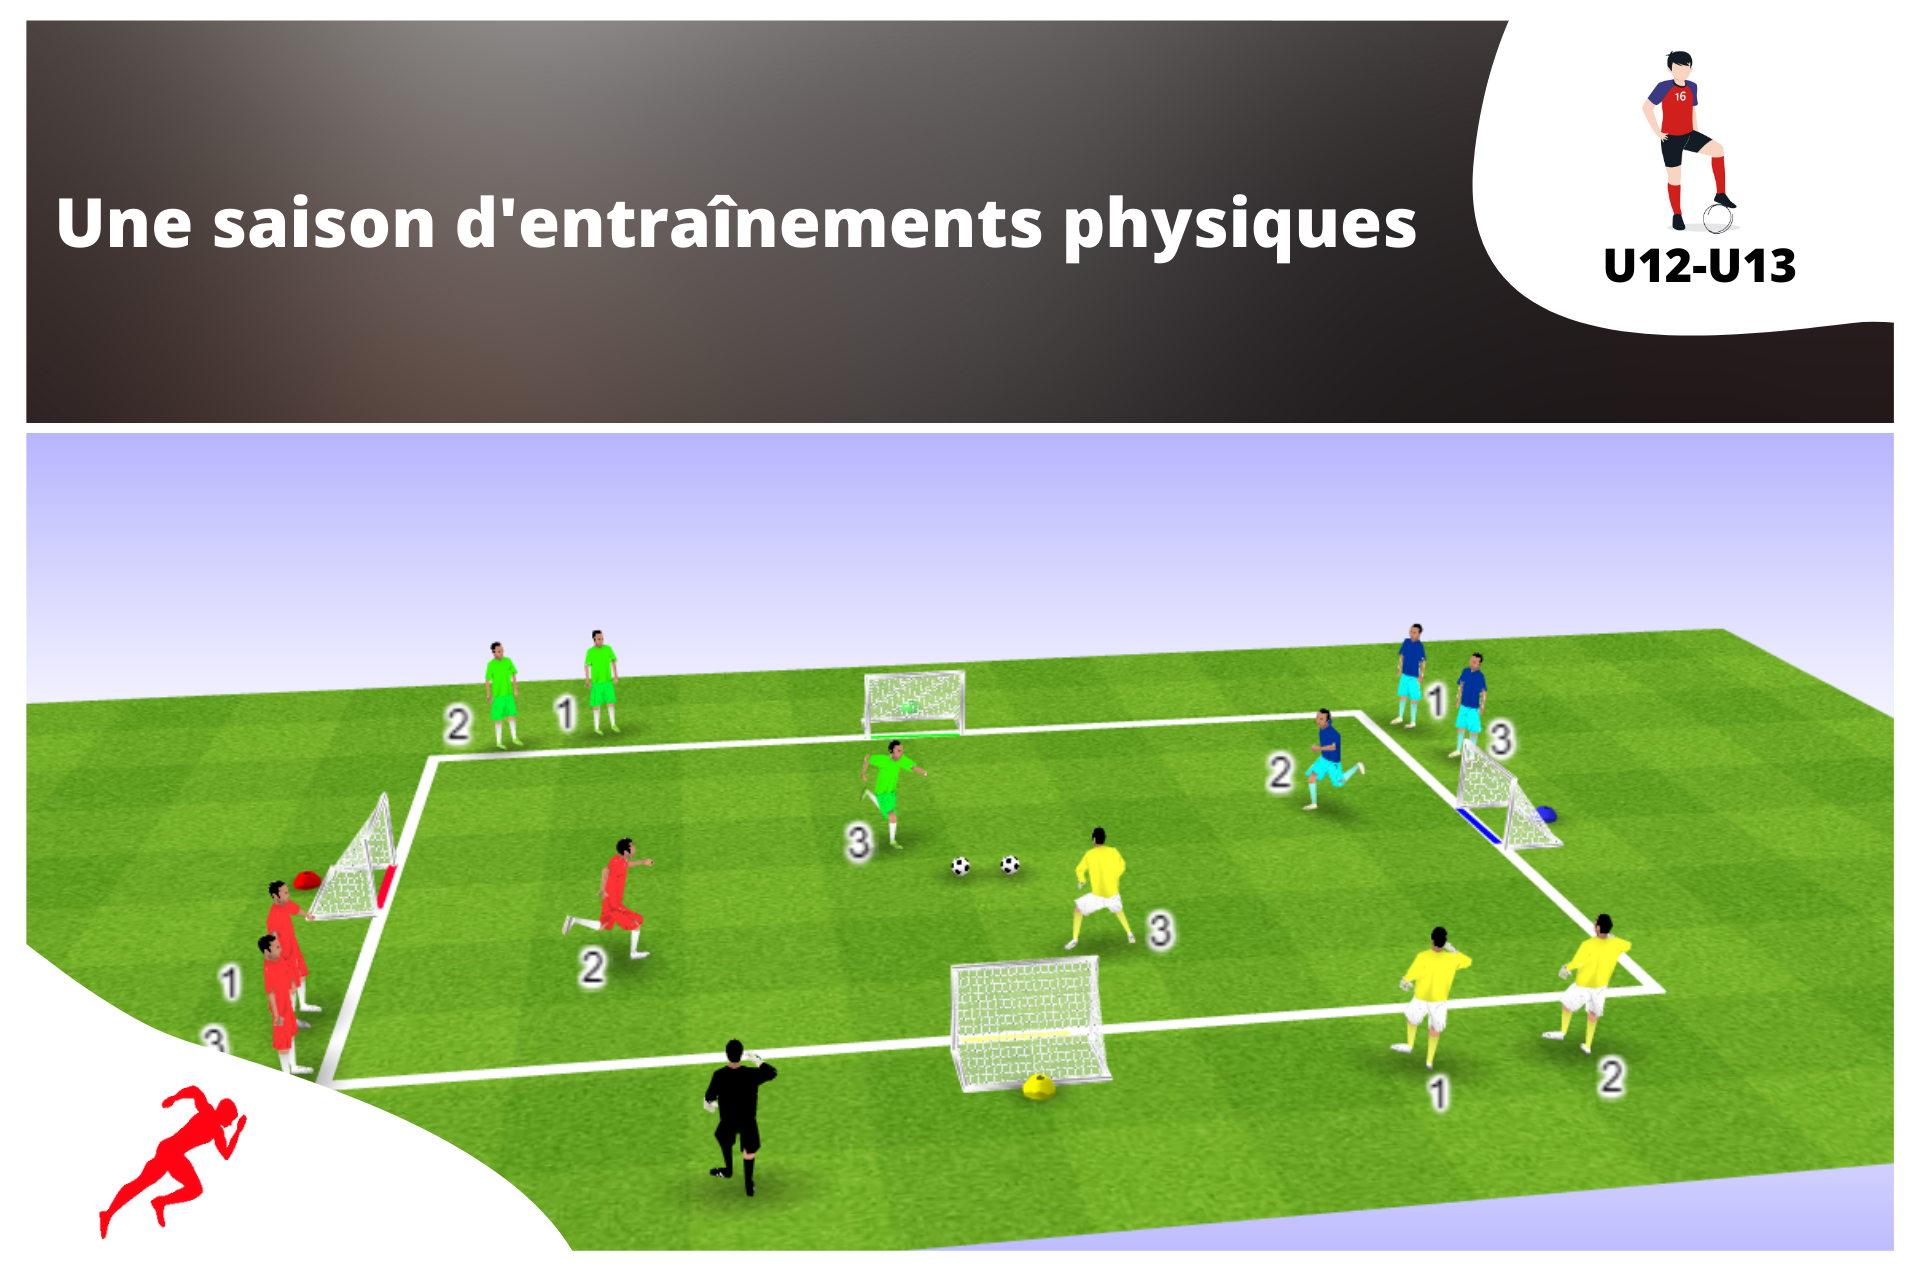 Programme sur une saison complète (U12-U13) - preparationphysiquefootball-shop.com